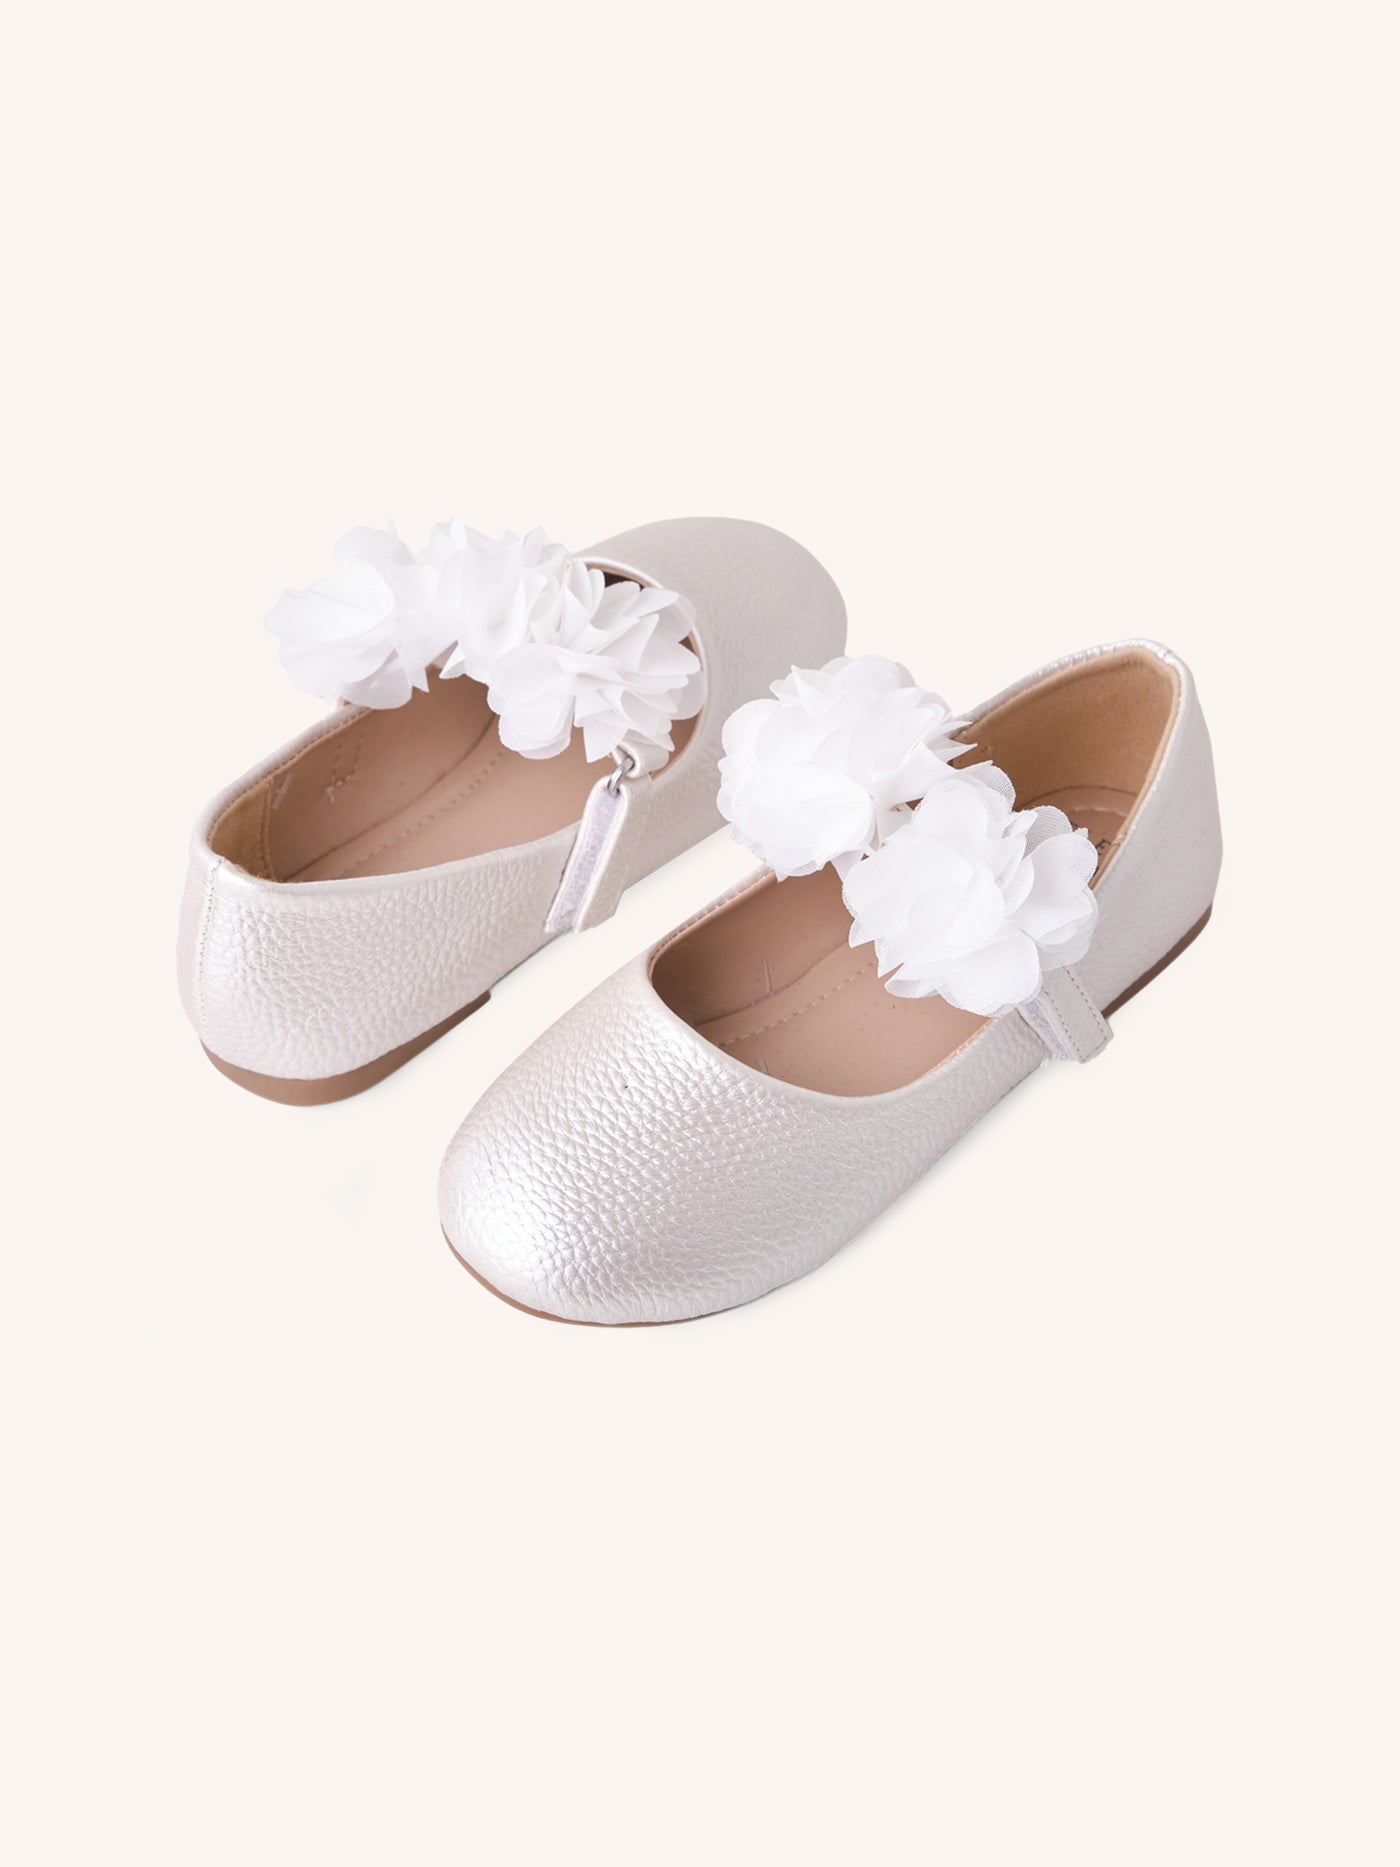 Flower Ballet Shoe - Pearl